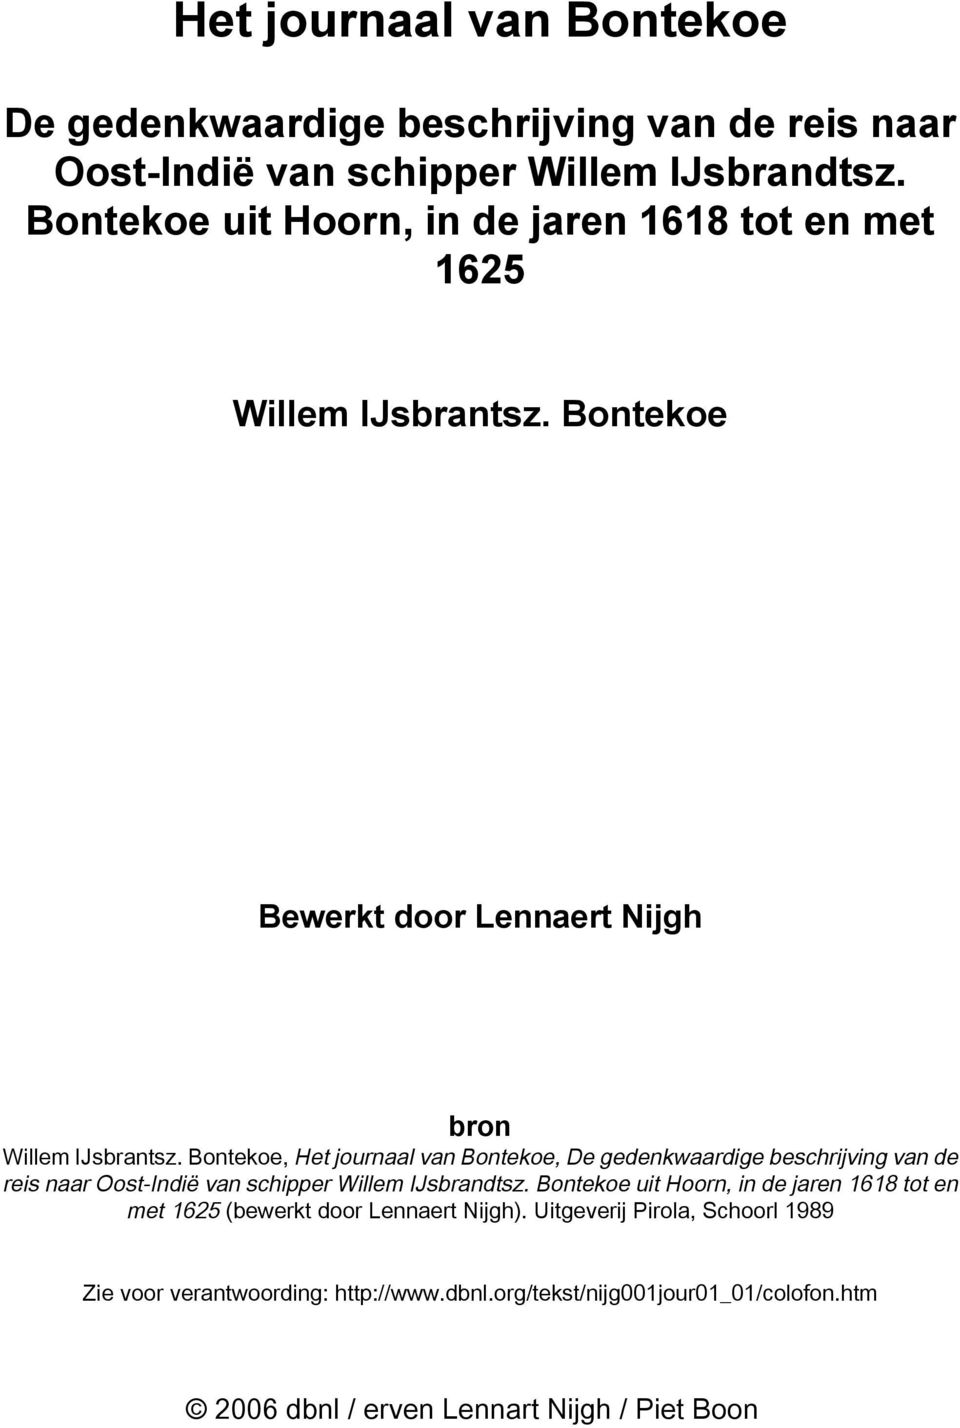 Bontekoe Bewerkt door Lennaert Nijgh bron, De gedenkwaardige beschrijving van de reis naar Oost-Indië van schipper Willem IJsbrandtsz.